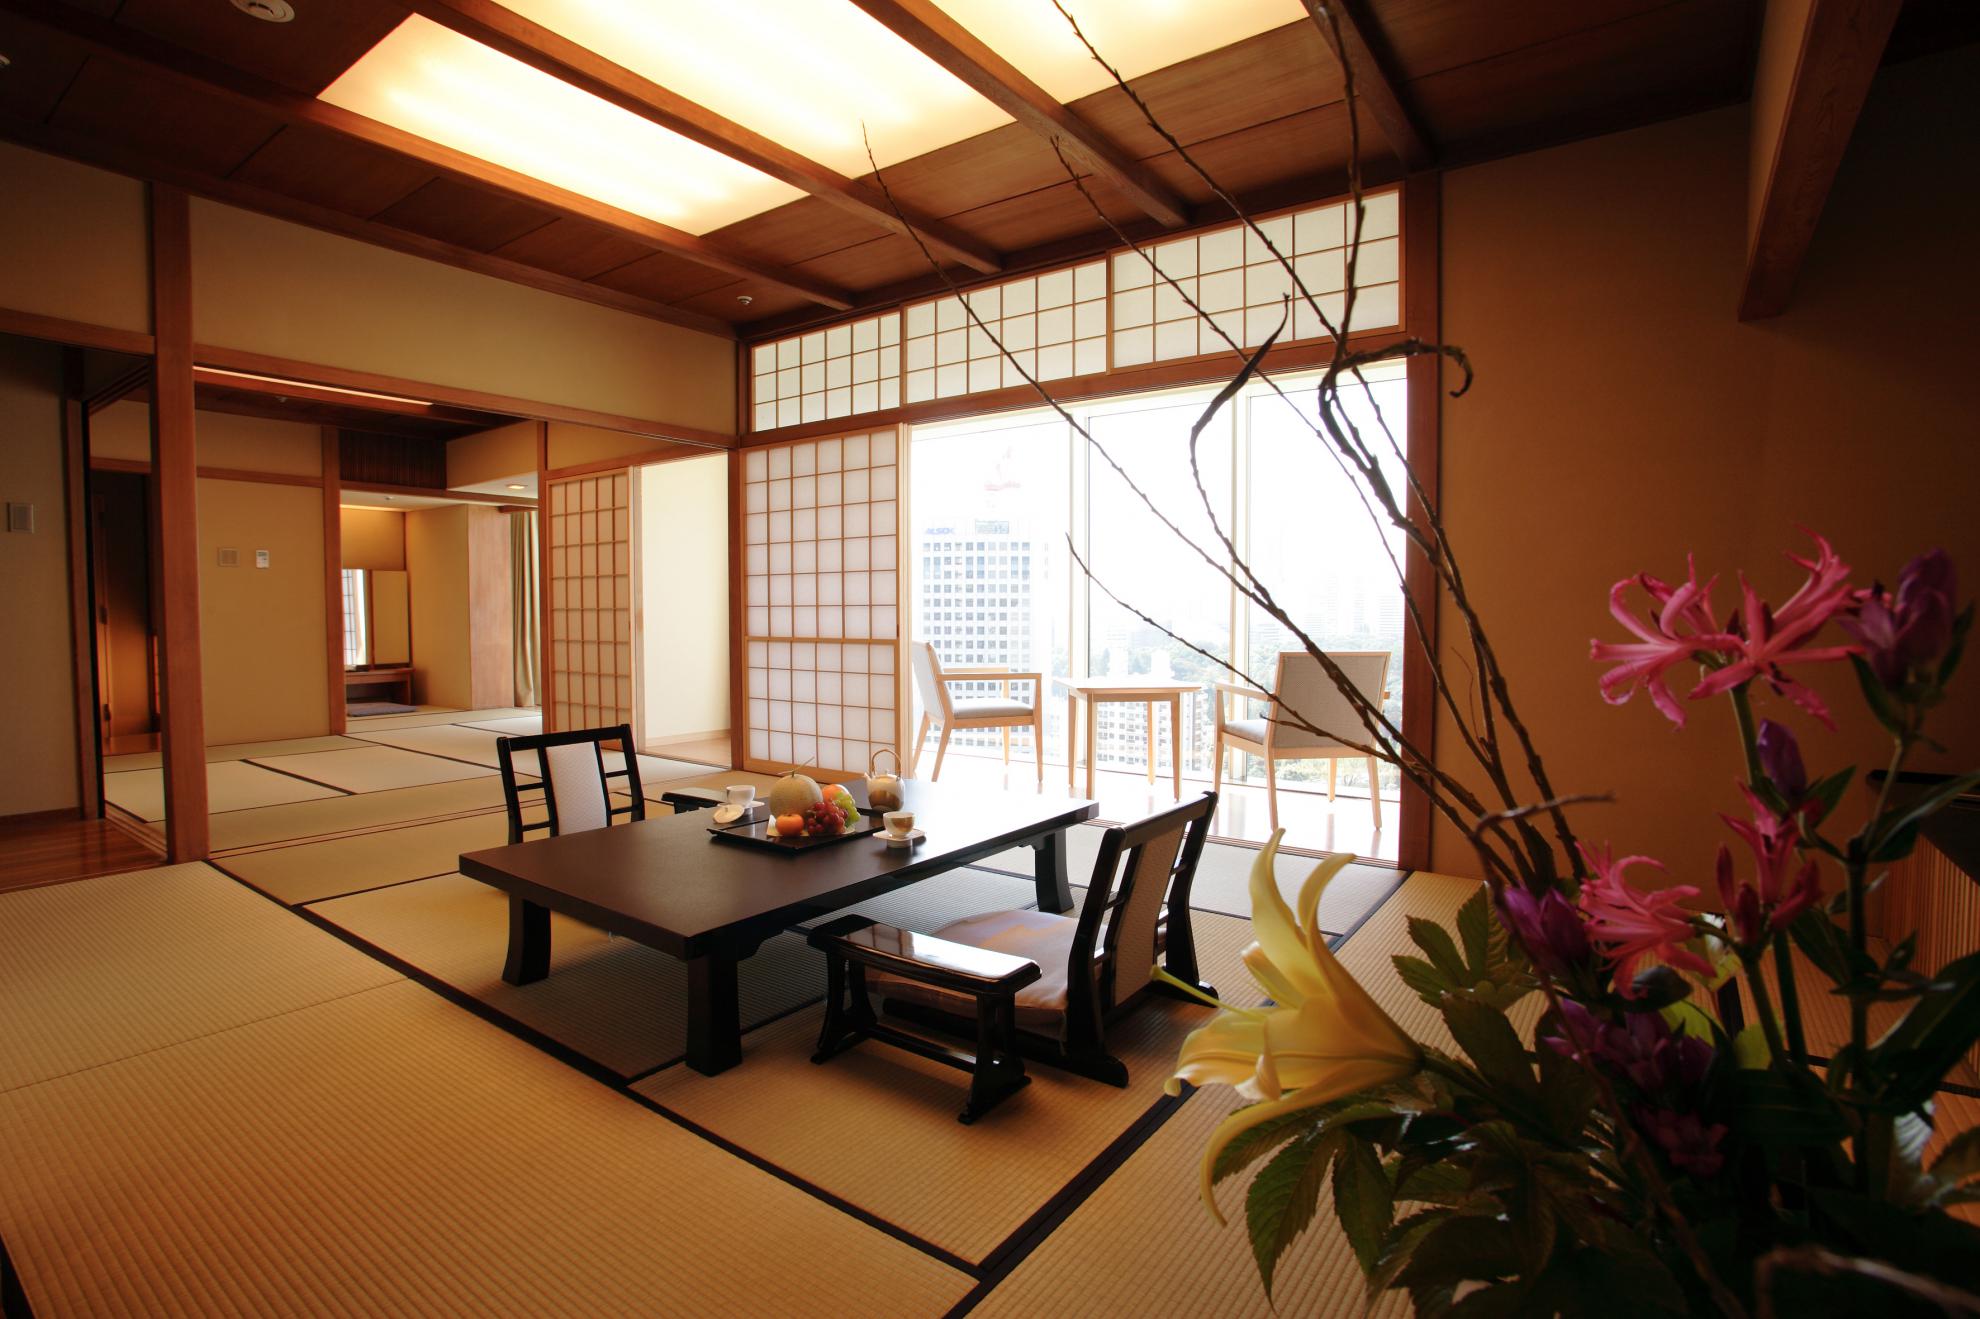 Забронировать столик в японском саду. Гостиница в Японии Tokio Inn. Отель «хёши» в Японии. Отель в японском стиле. Кабинет в японском стиле.